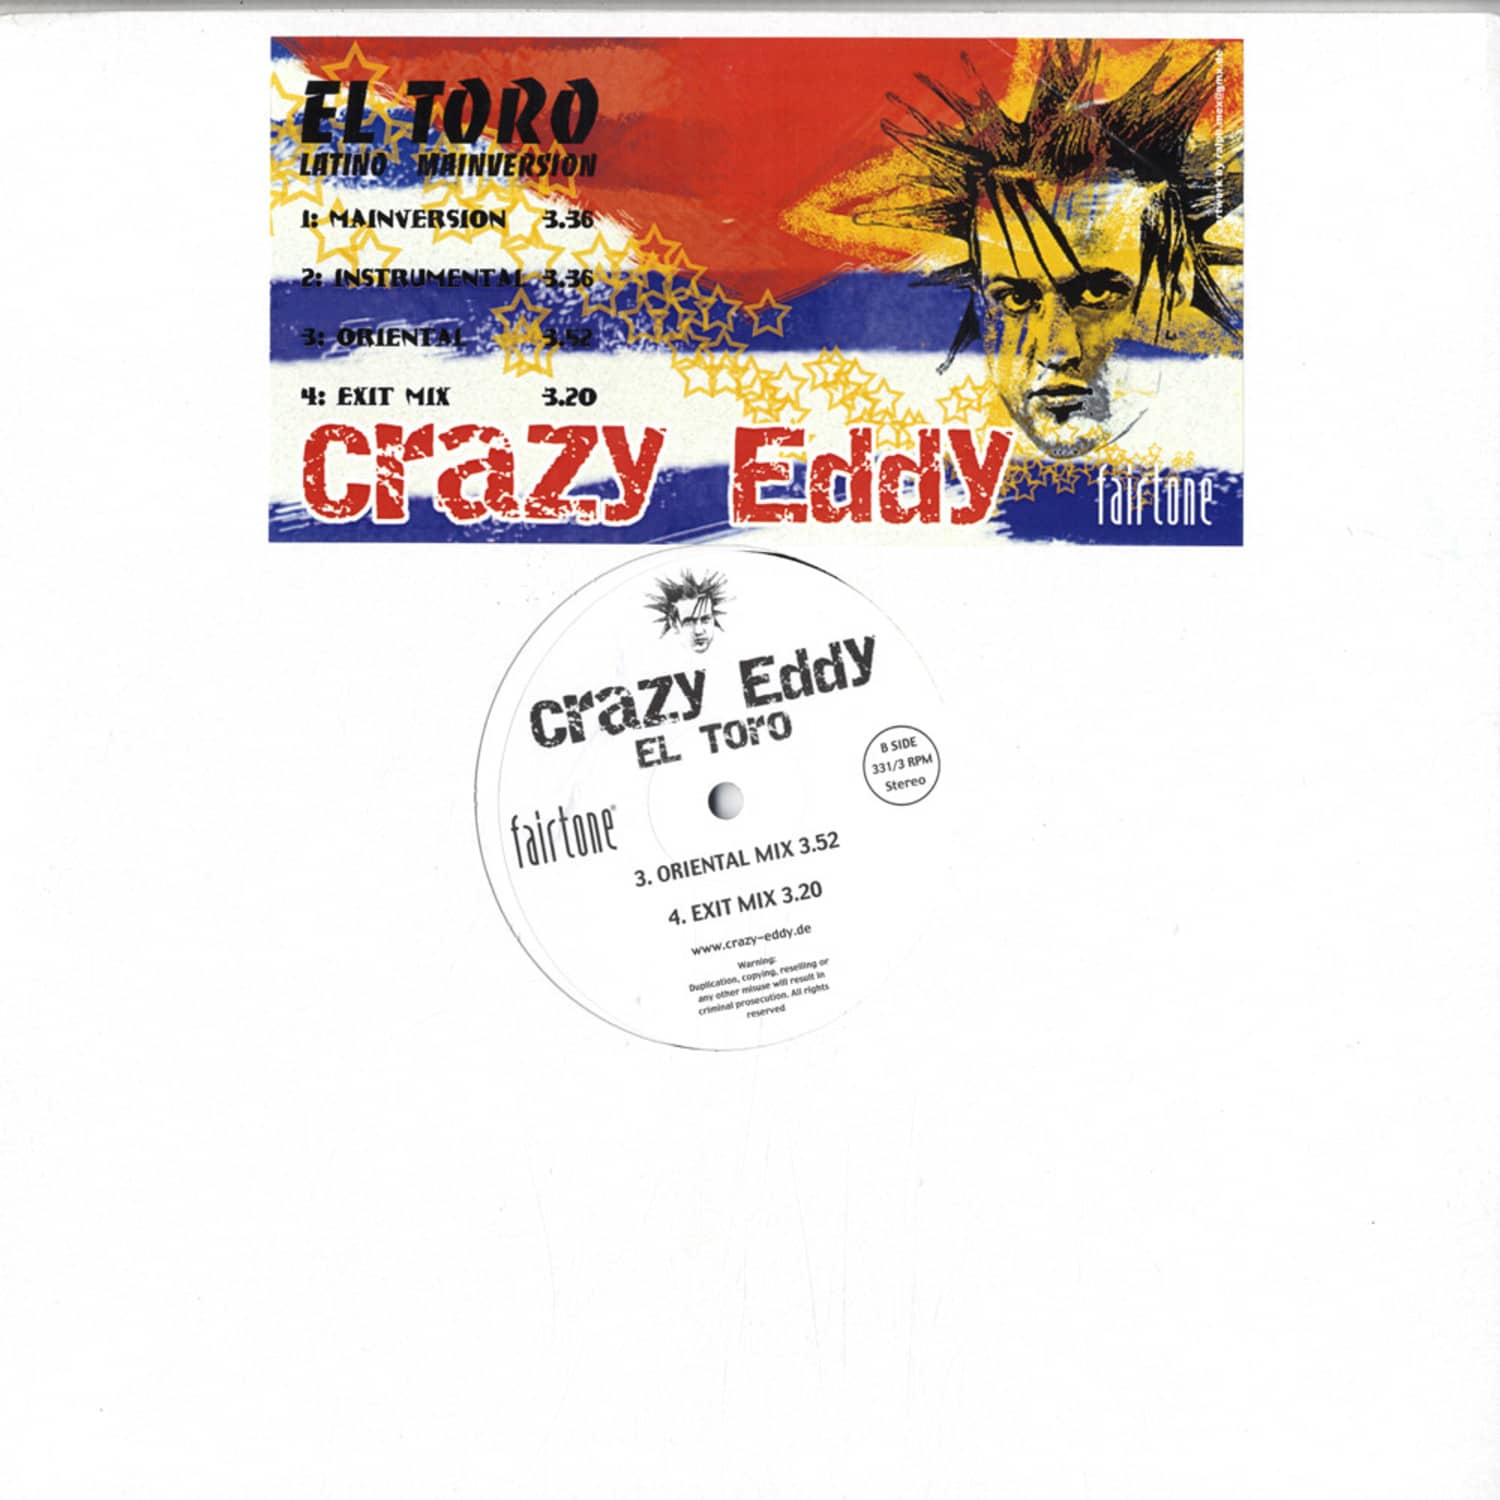 Crazy Eddy - EL TORO